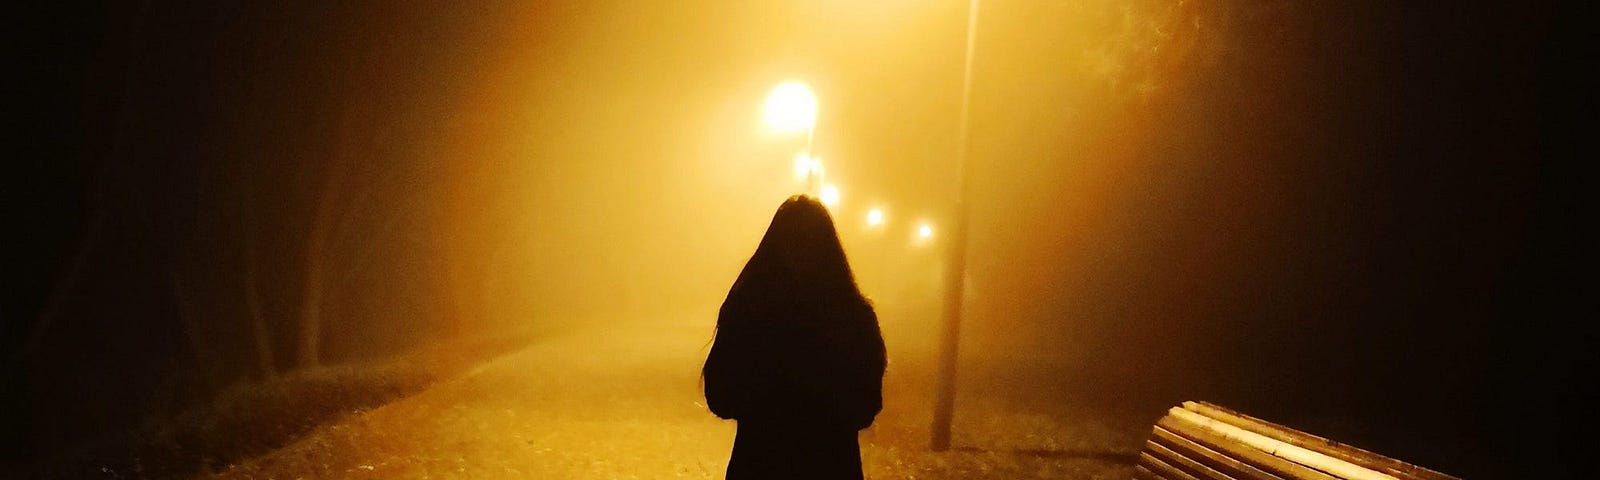 An individual walking at night